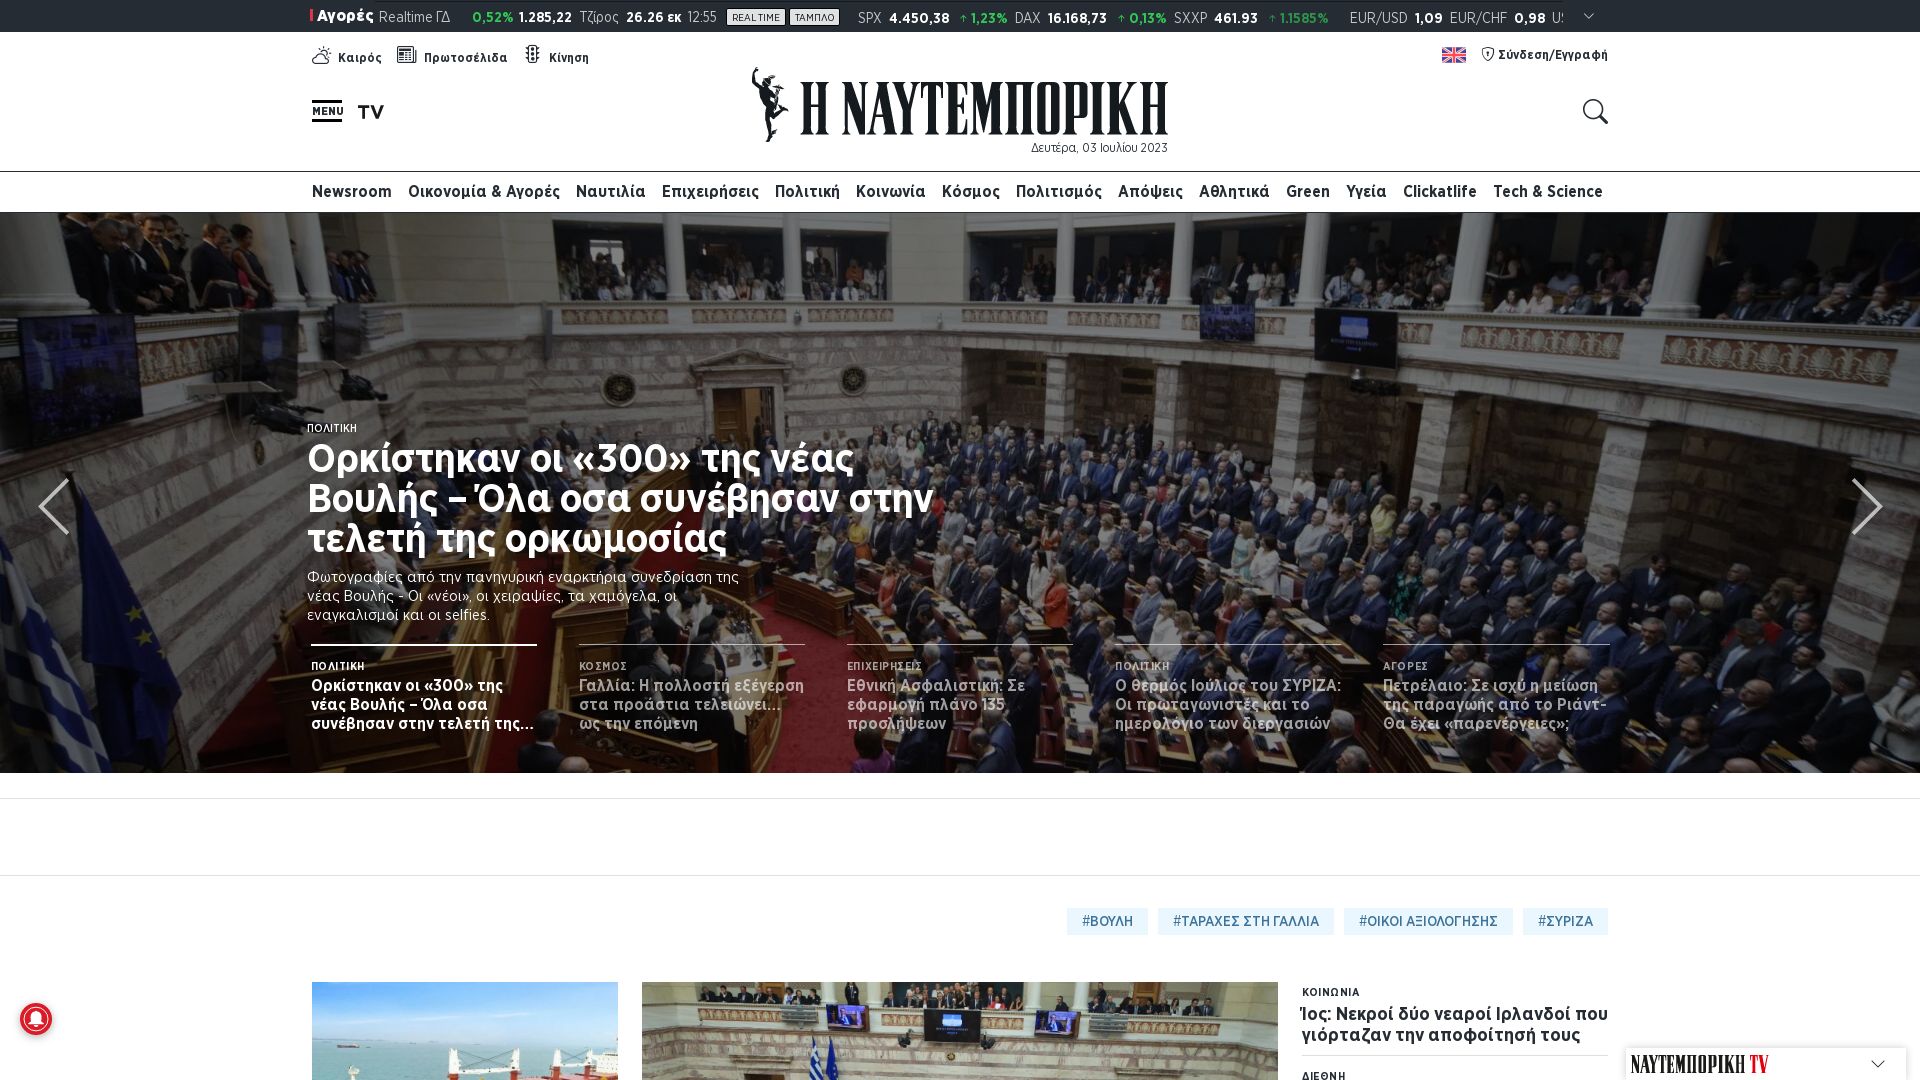 Stato del sito web naftemporiki.gr è   ONLINE